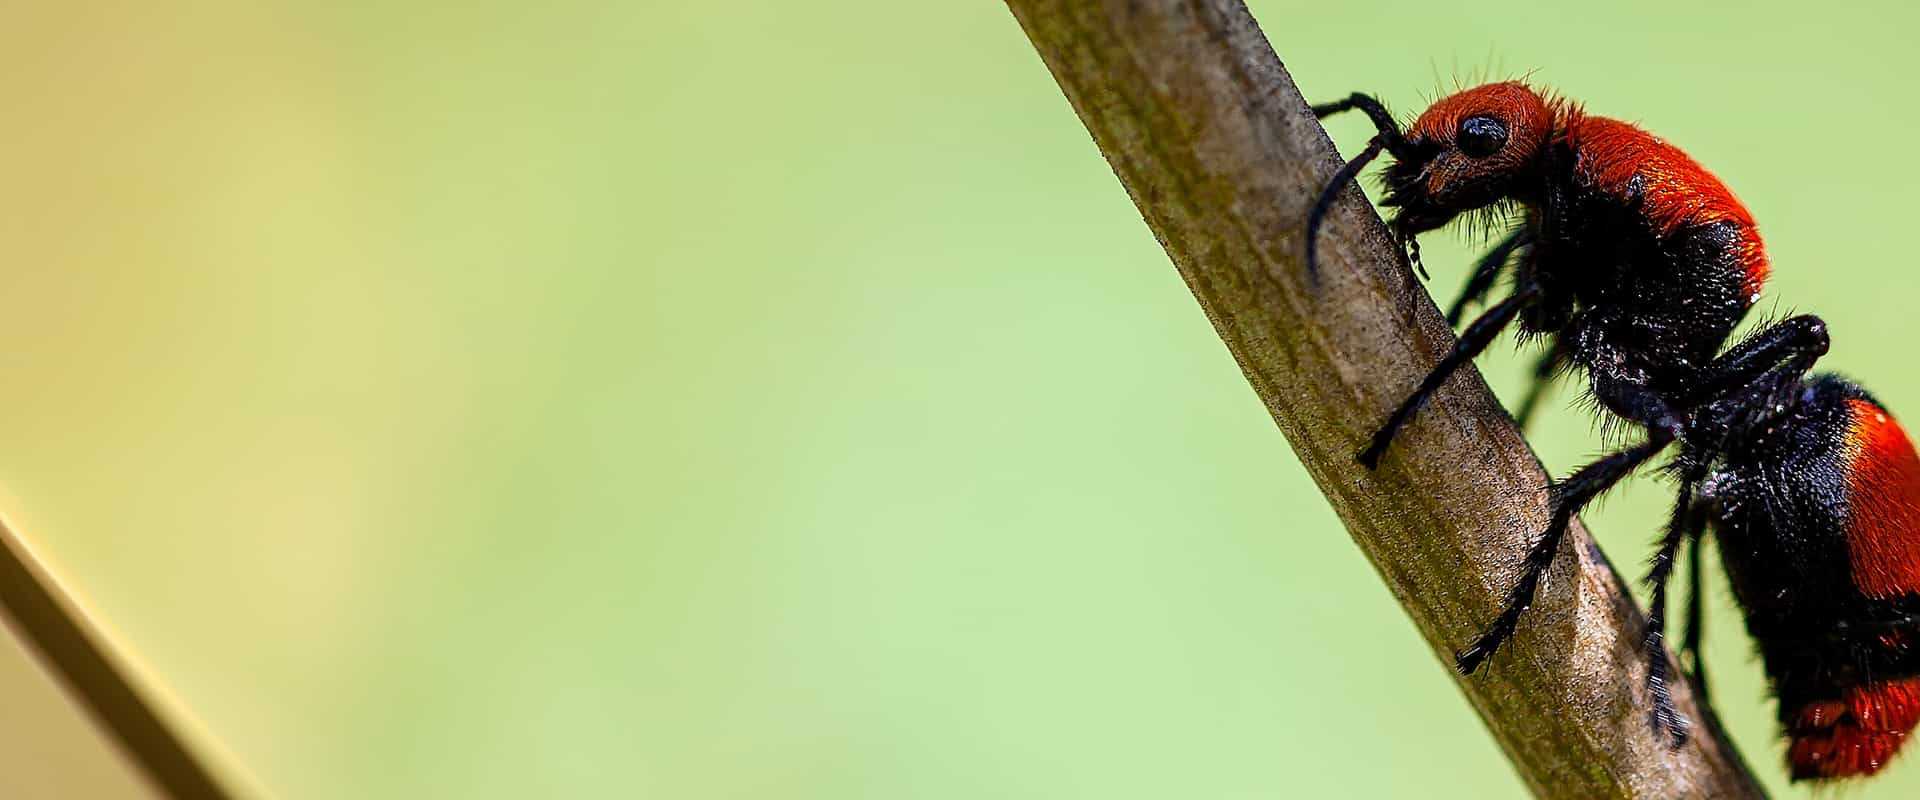 velvet ant on a stick